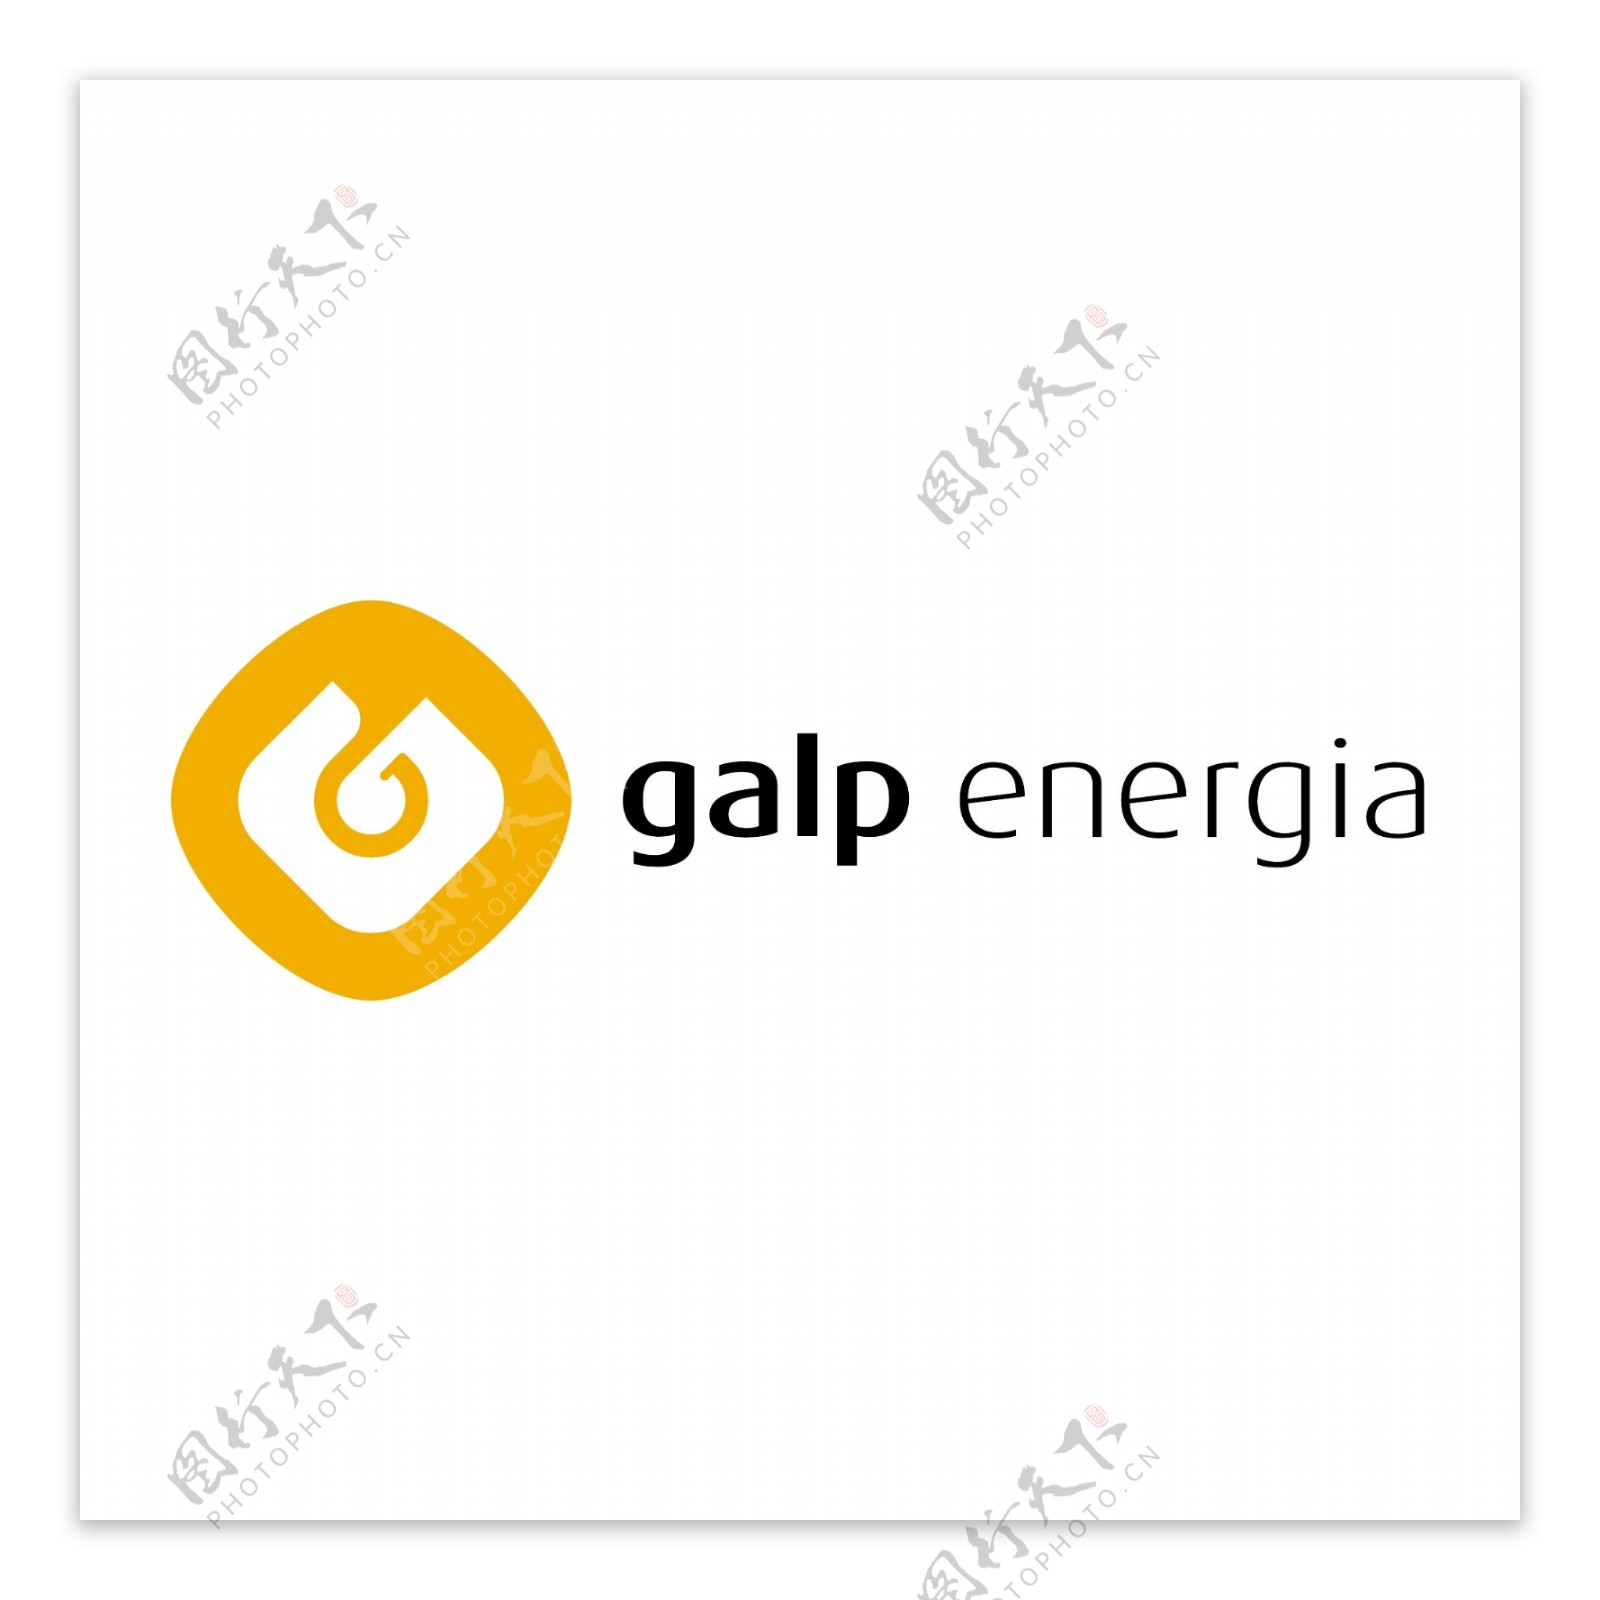 GalpEnergia公司2